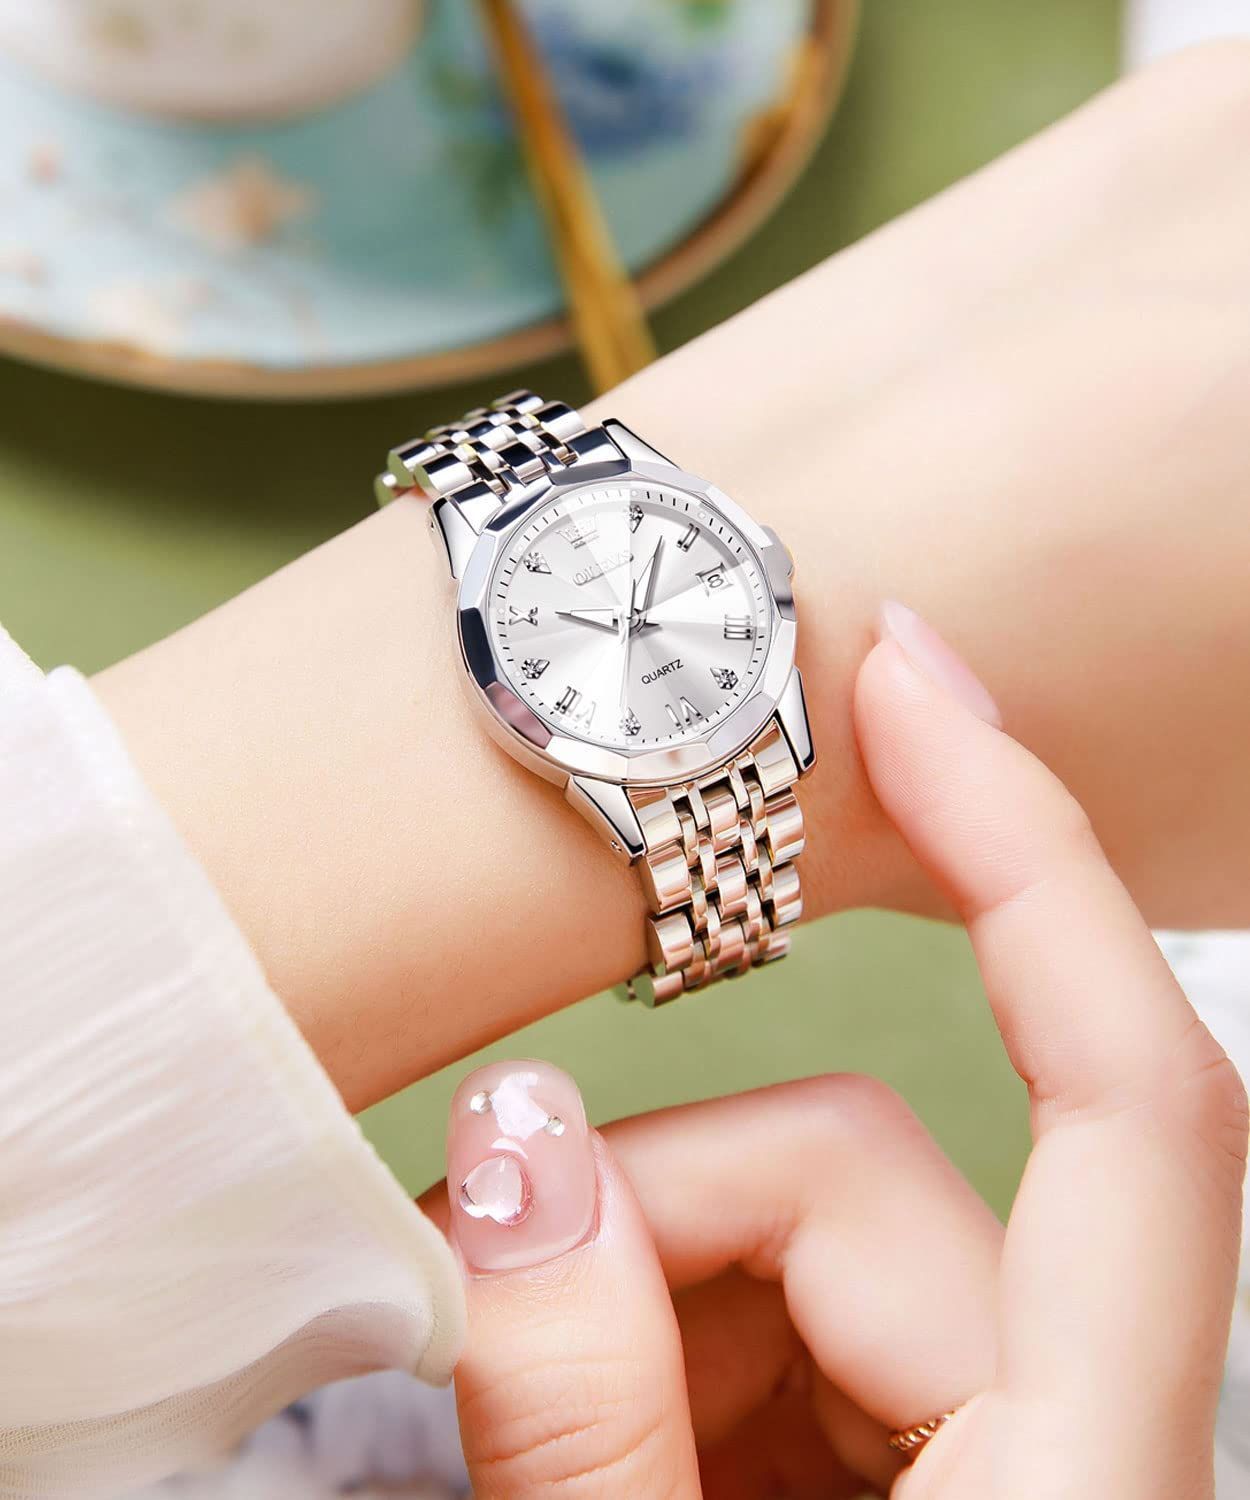 【新着商品】メタルバンド ダイヤモンドカジュアルとけい腕時計レディース シンプル女性腕時計ギフト レディース腕時計ホワイトかわいい アナログ防水日付 クォーツ時計 おしゃれ うで時計レディース人気 OLEVS